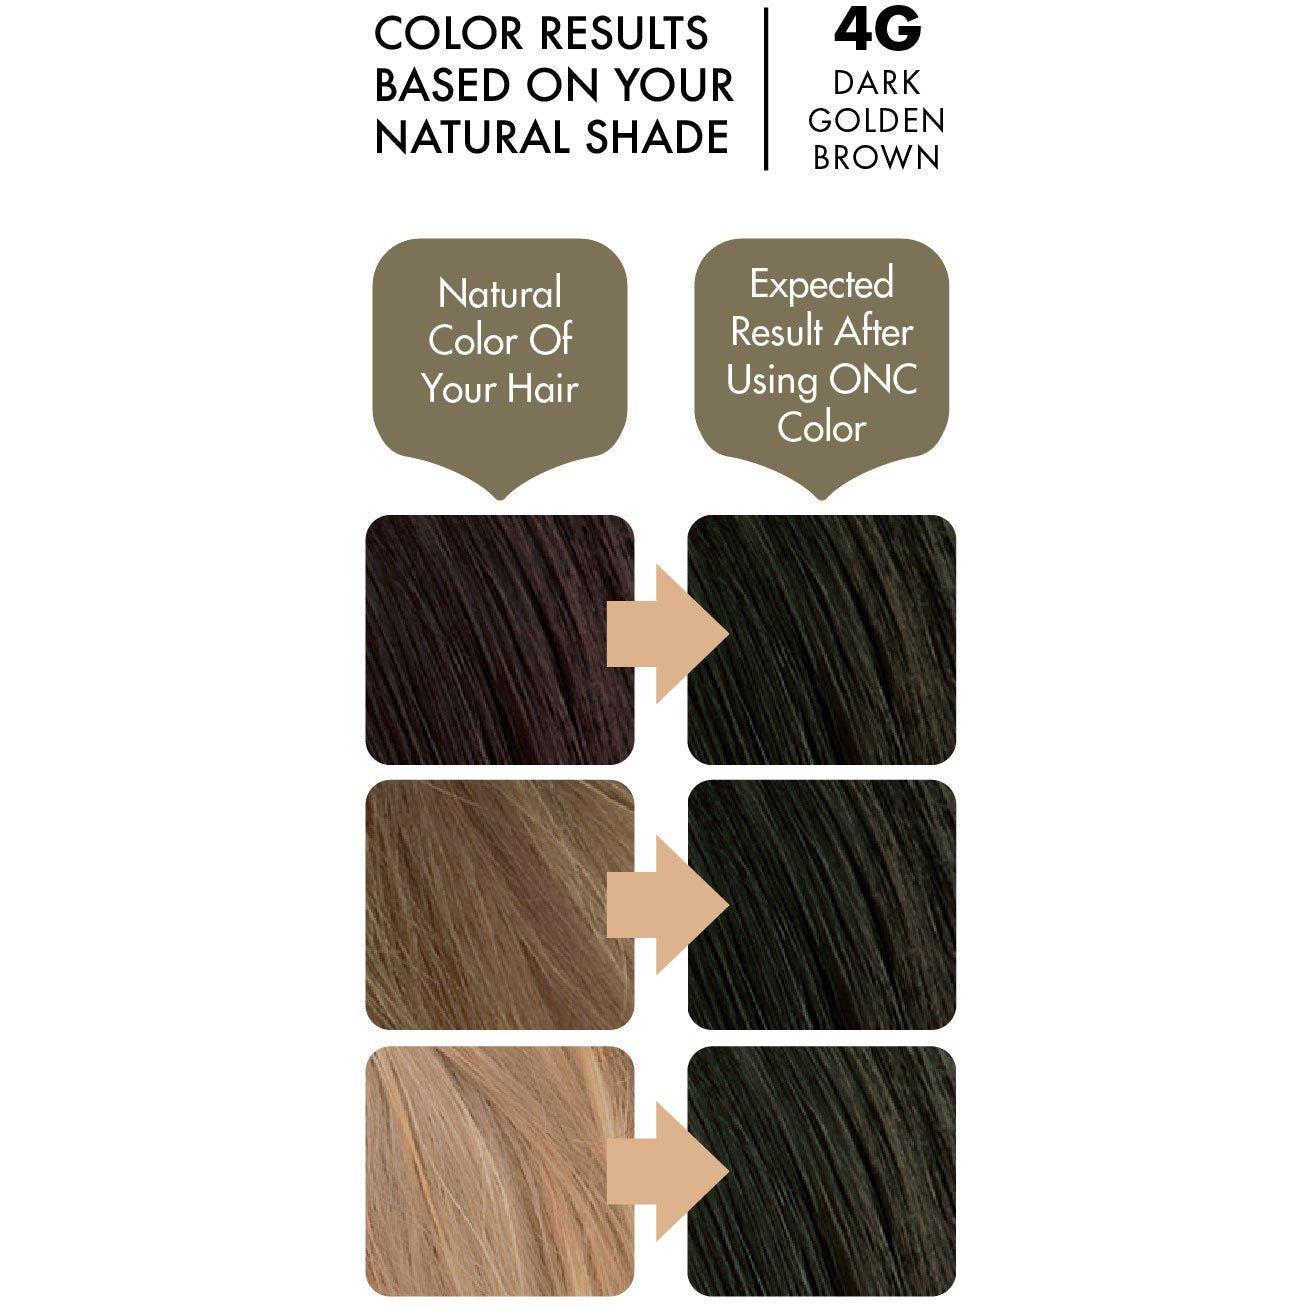 4G Dark Golden Brown Heat Activated Hair Dye With Organic Ingredients - 120 ml (4 fl. oz)